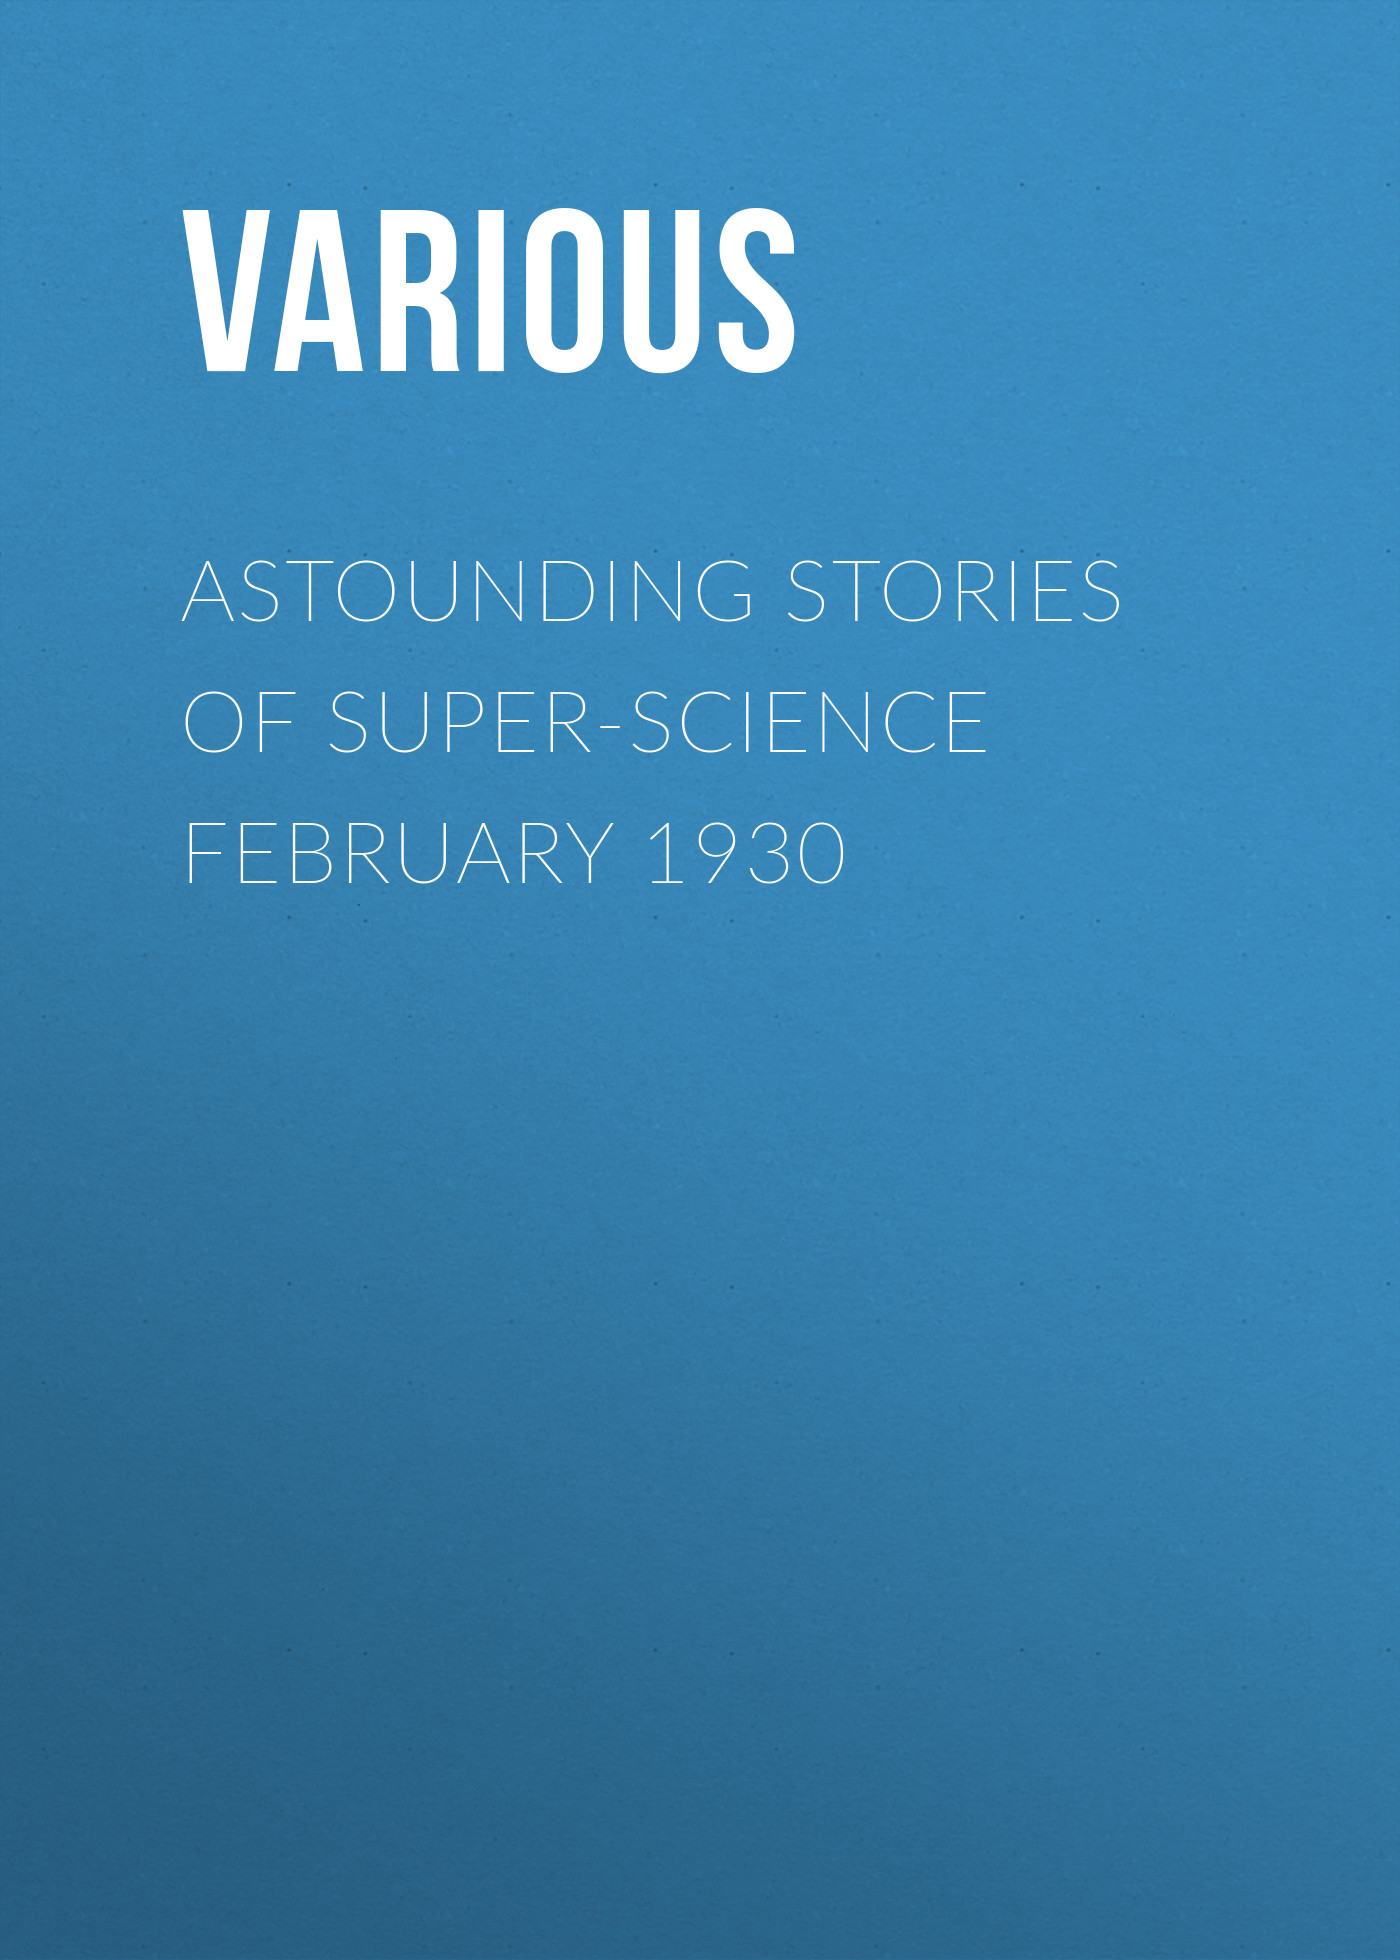 Книга Astounding Stories of Super-Science February 1930 из серии , созданная  Various, может относится к жанру Журналы, Зарубежная образовательная литература. Стоимость электронной книги Astounding Stories of Super-Science February 1930 с идентификатором 25568599 составляет 0 руб.